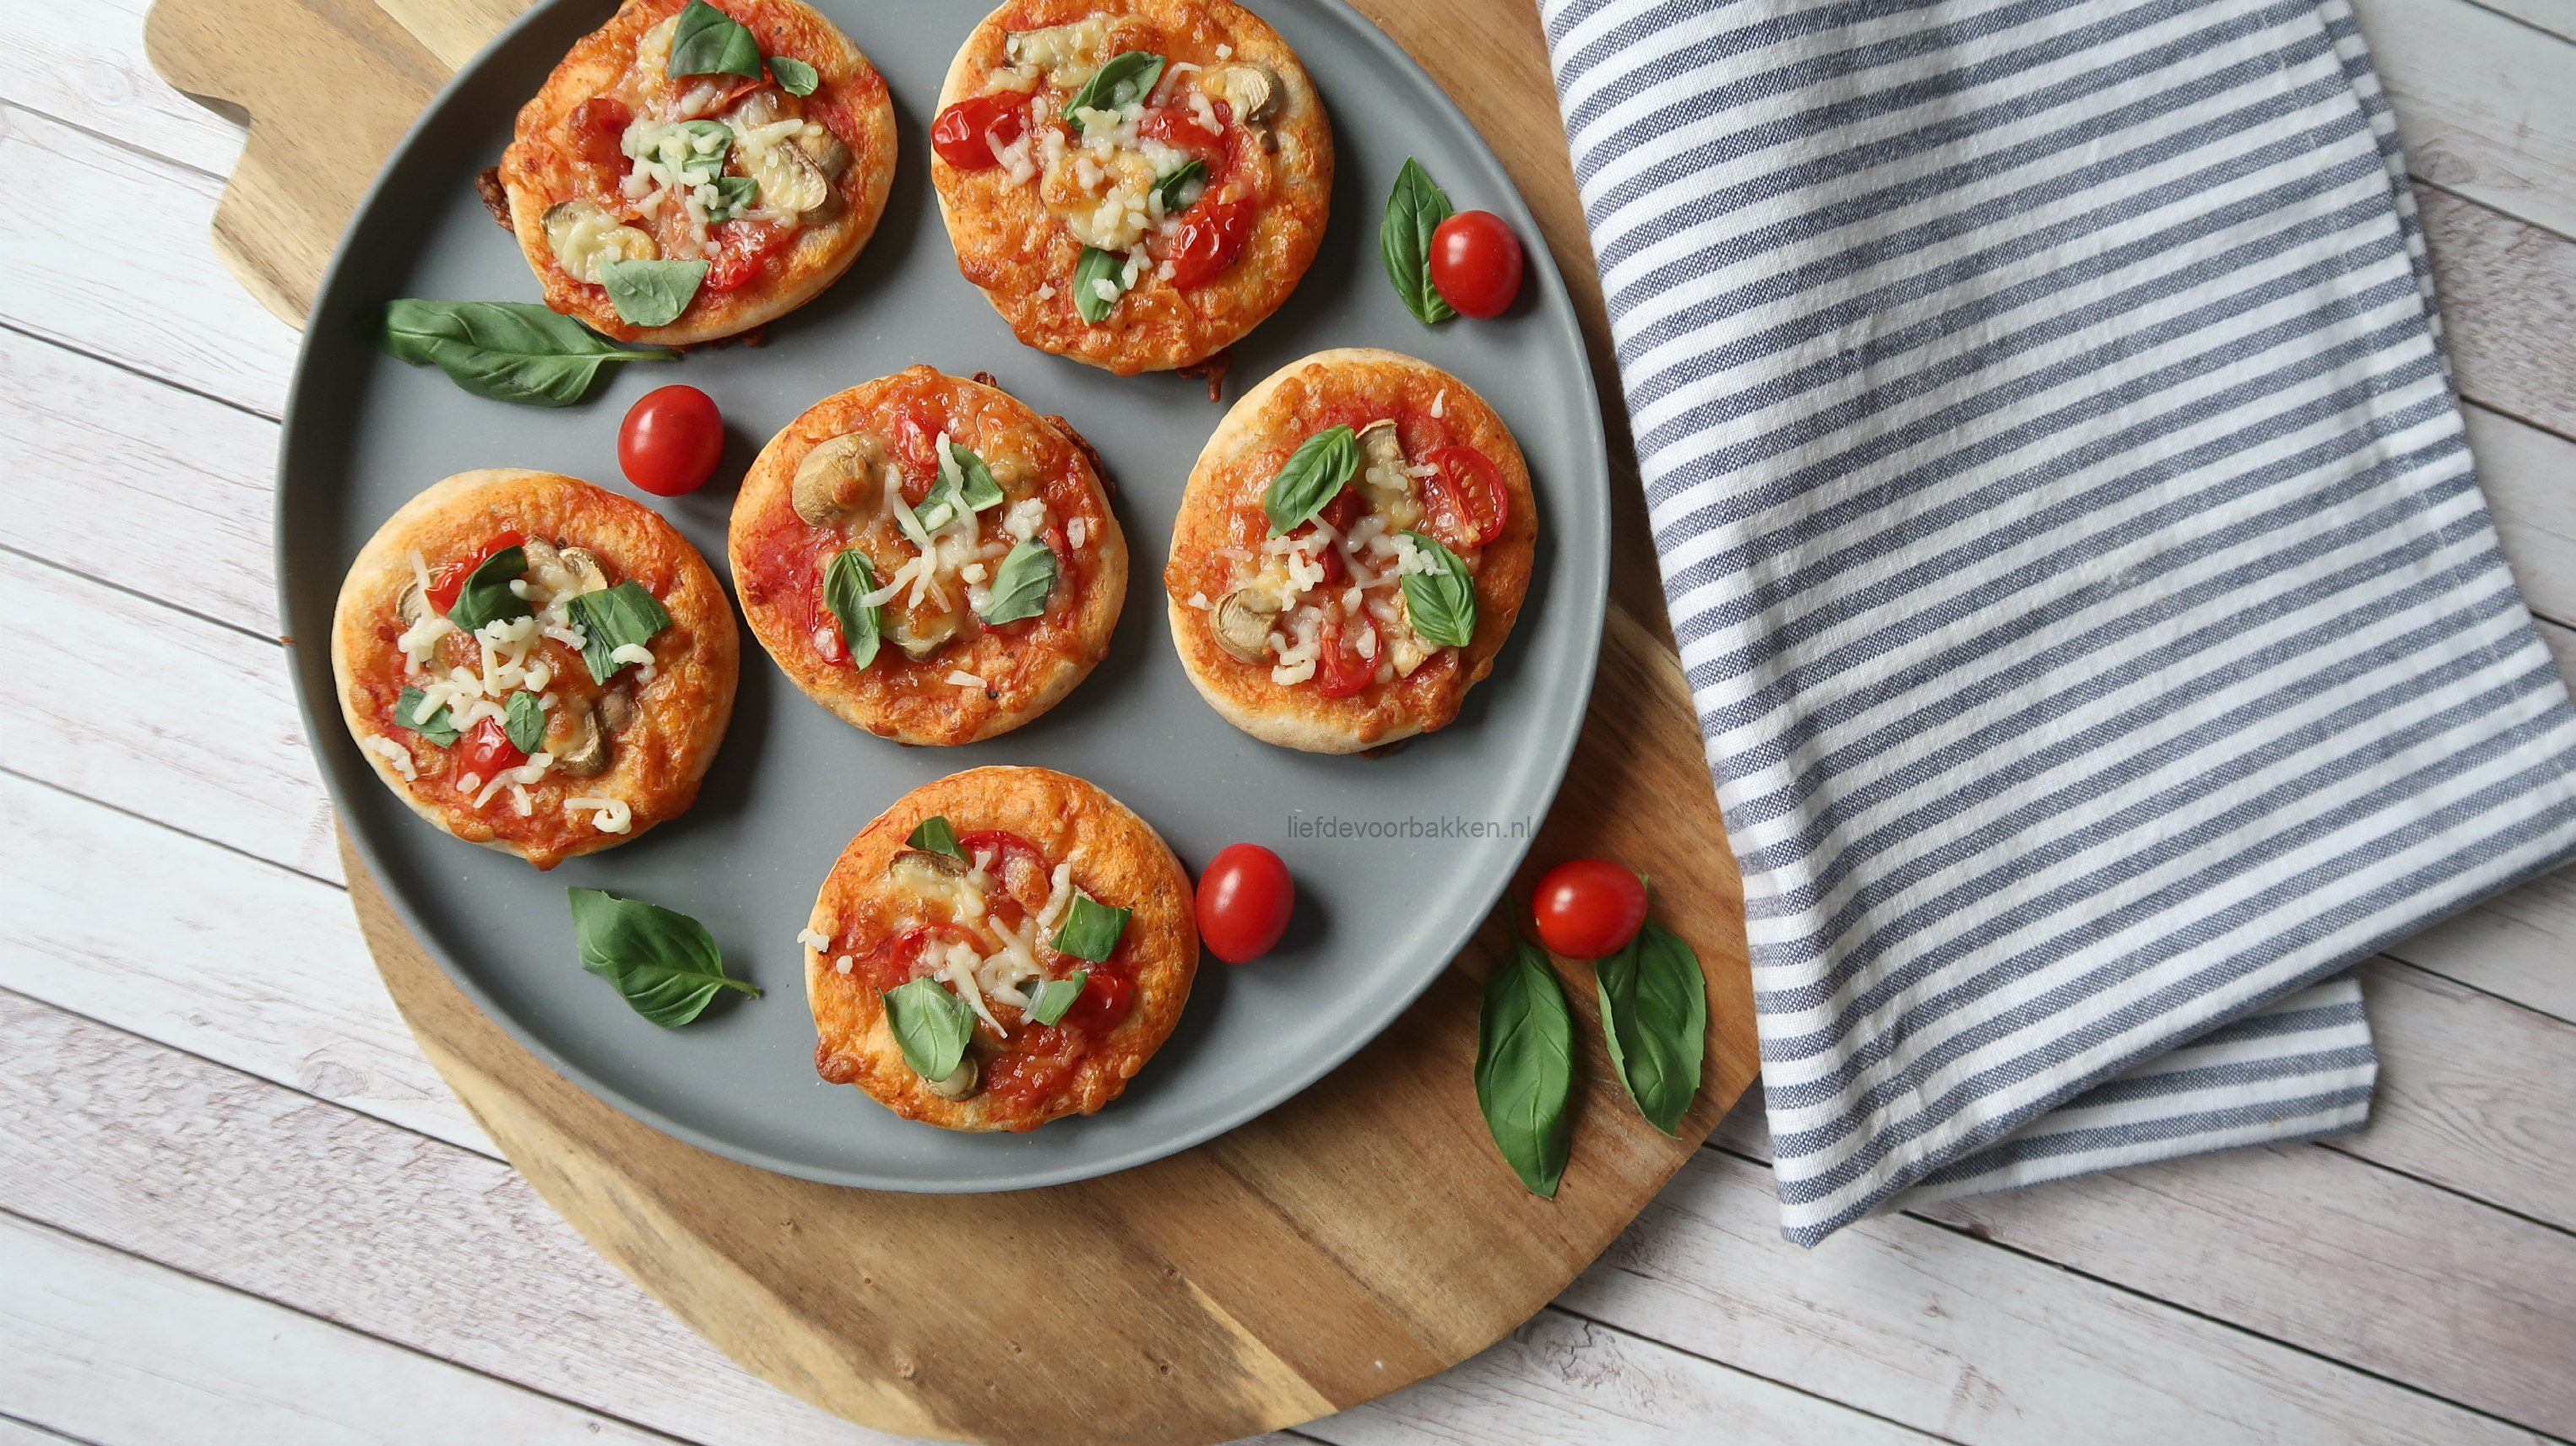 Video: vegetarische mini pizza’s – Liefde voor bakken